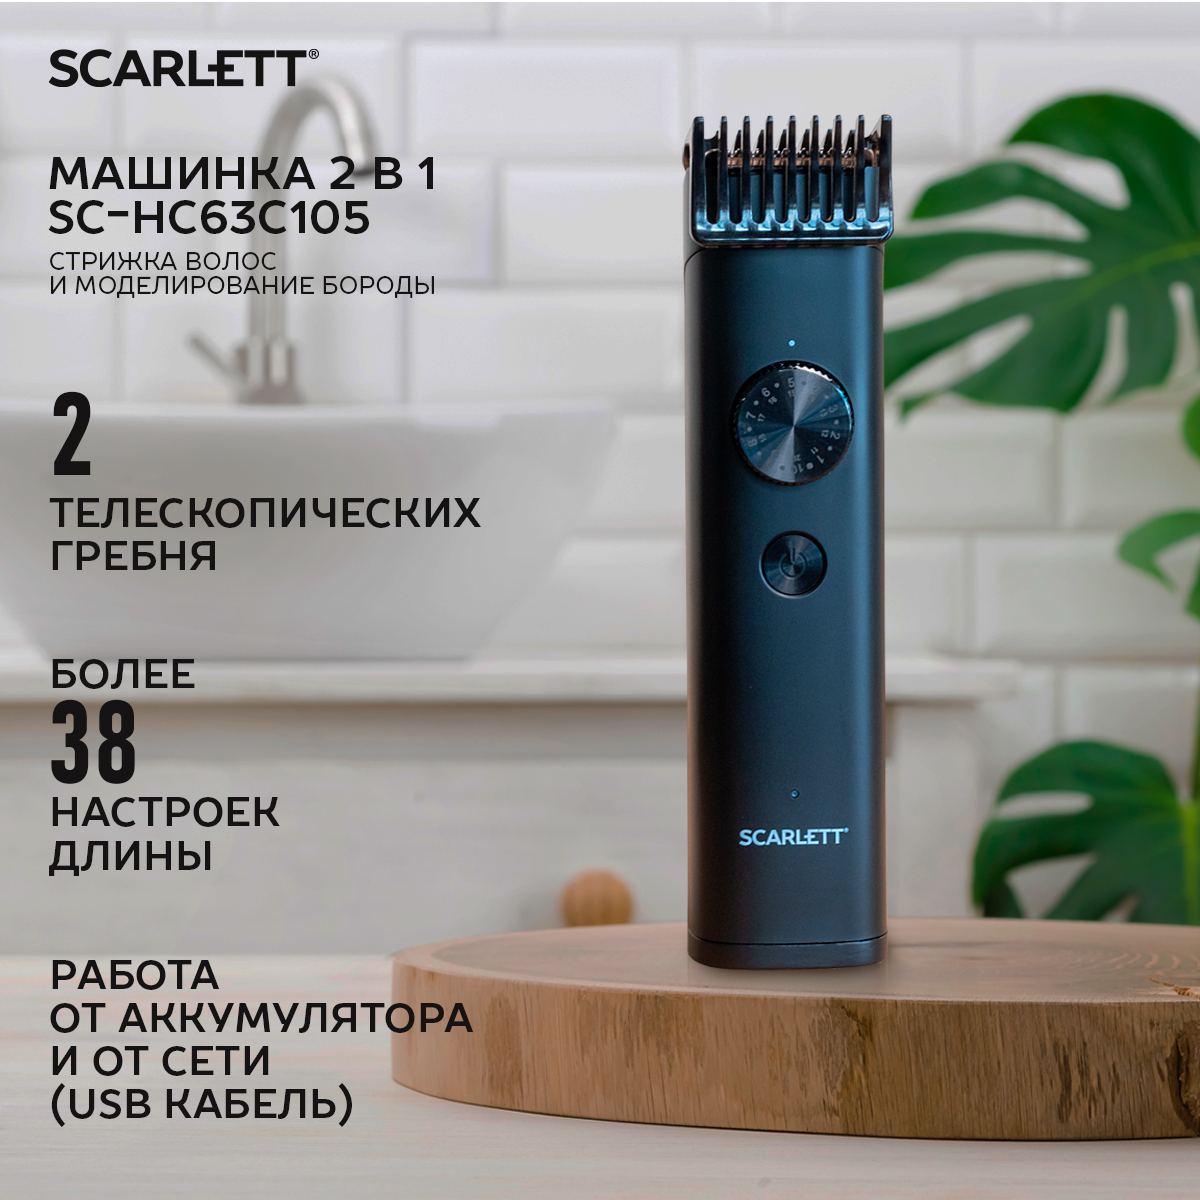 Машинка для стрижки волос Scarlett SC-HC63C105 черный машинка для стрижки волос scarlett sc 1263